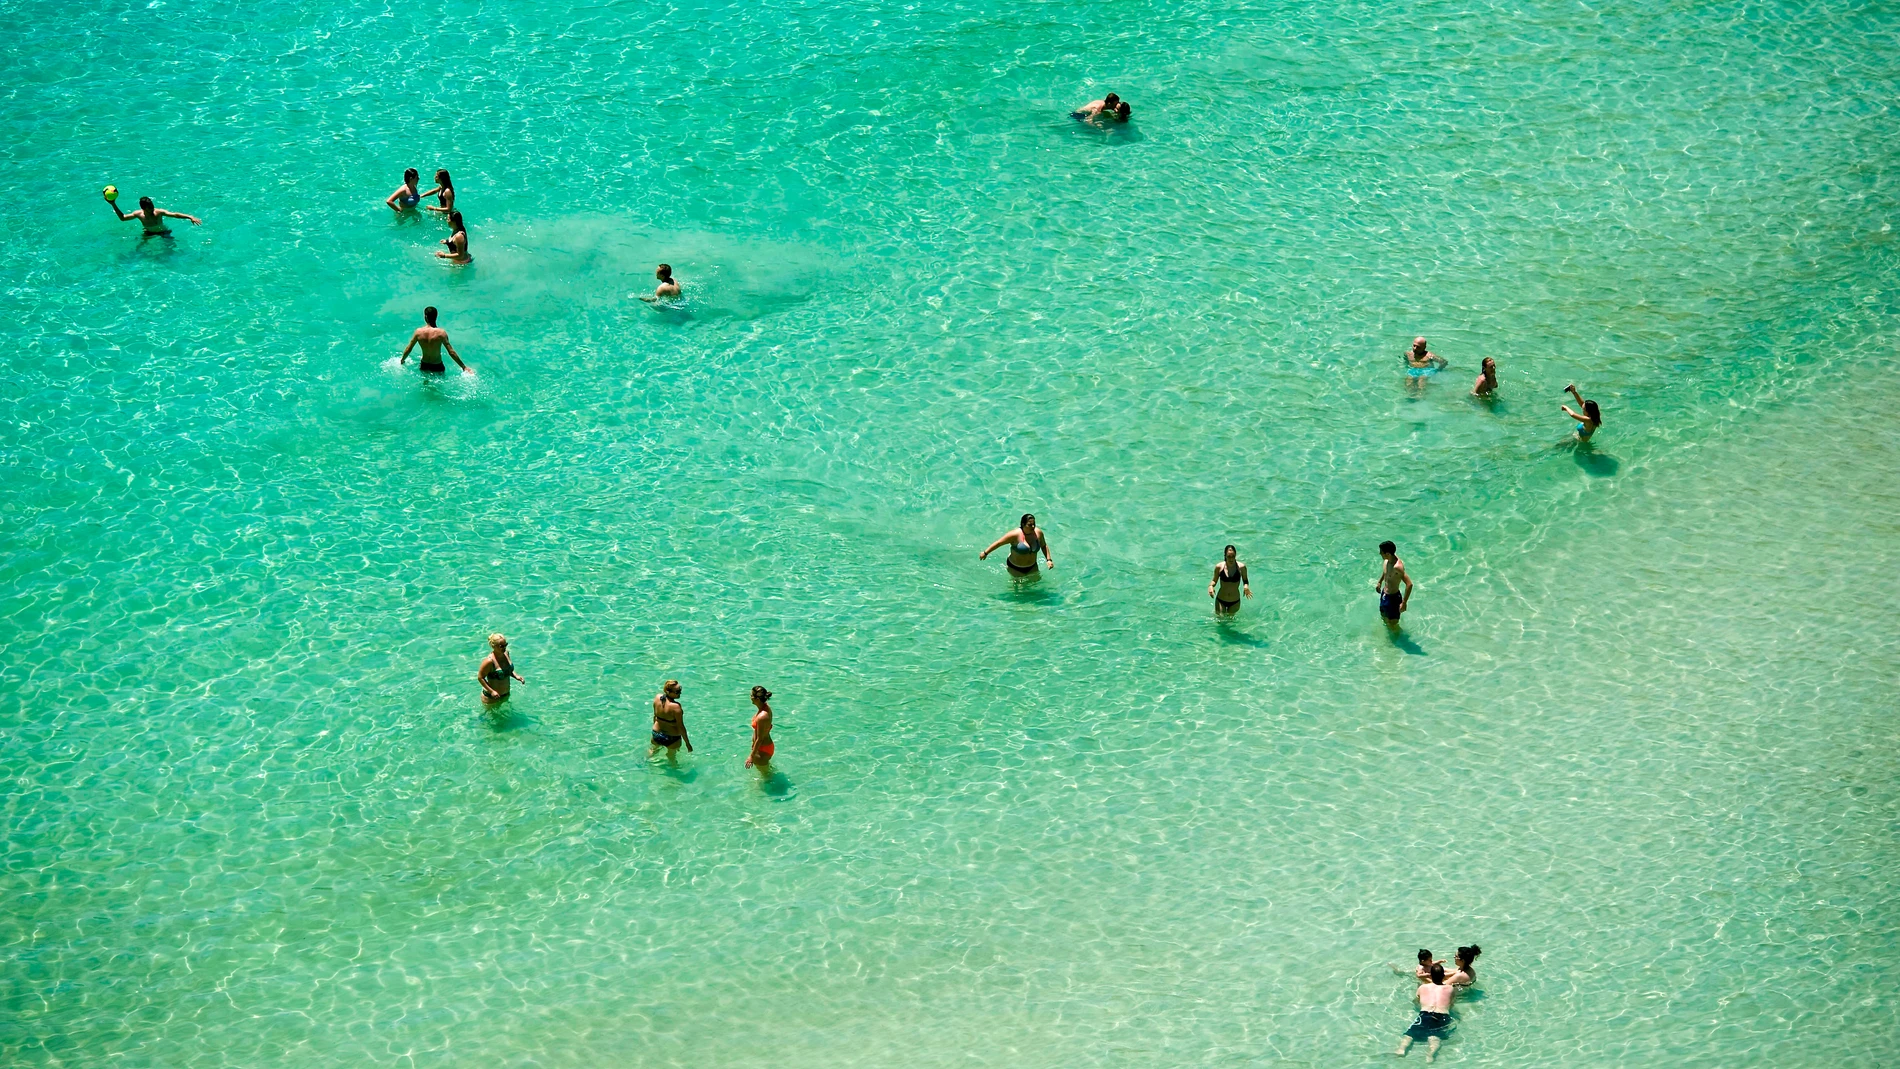 Varias personas se bañan en la playa de Cala en Porter (Alaior), en la costa sur de Menorca.